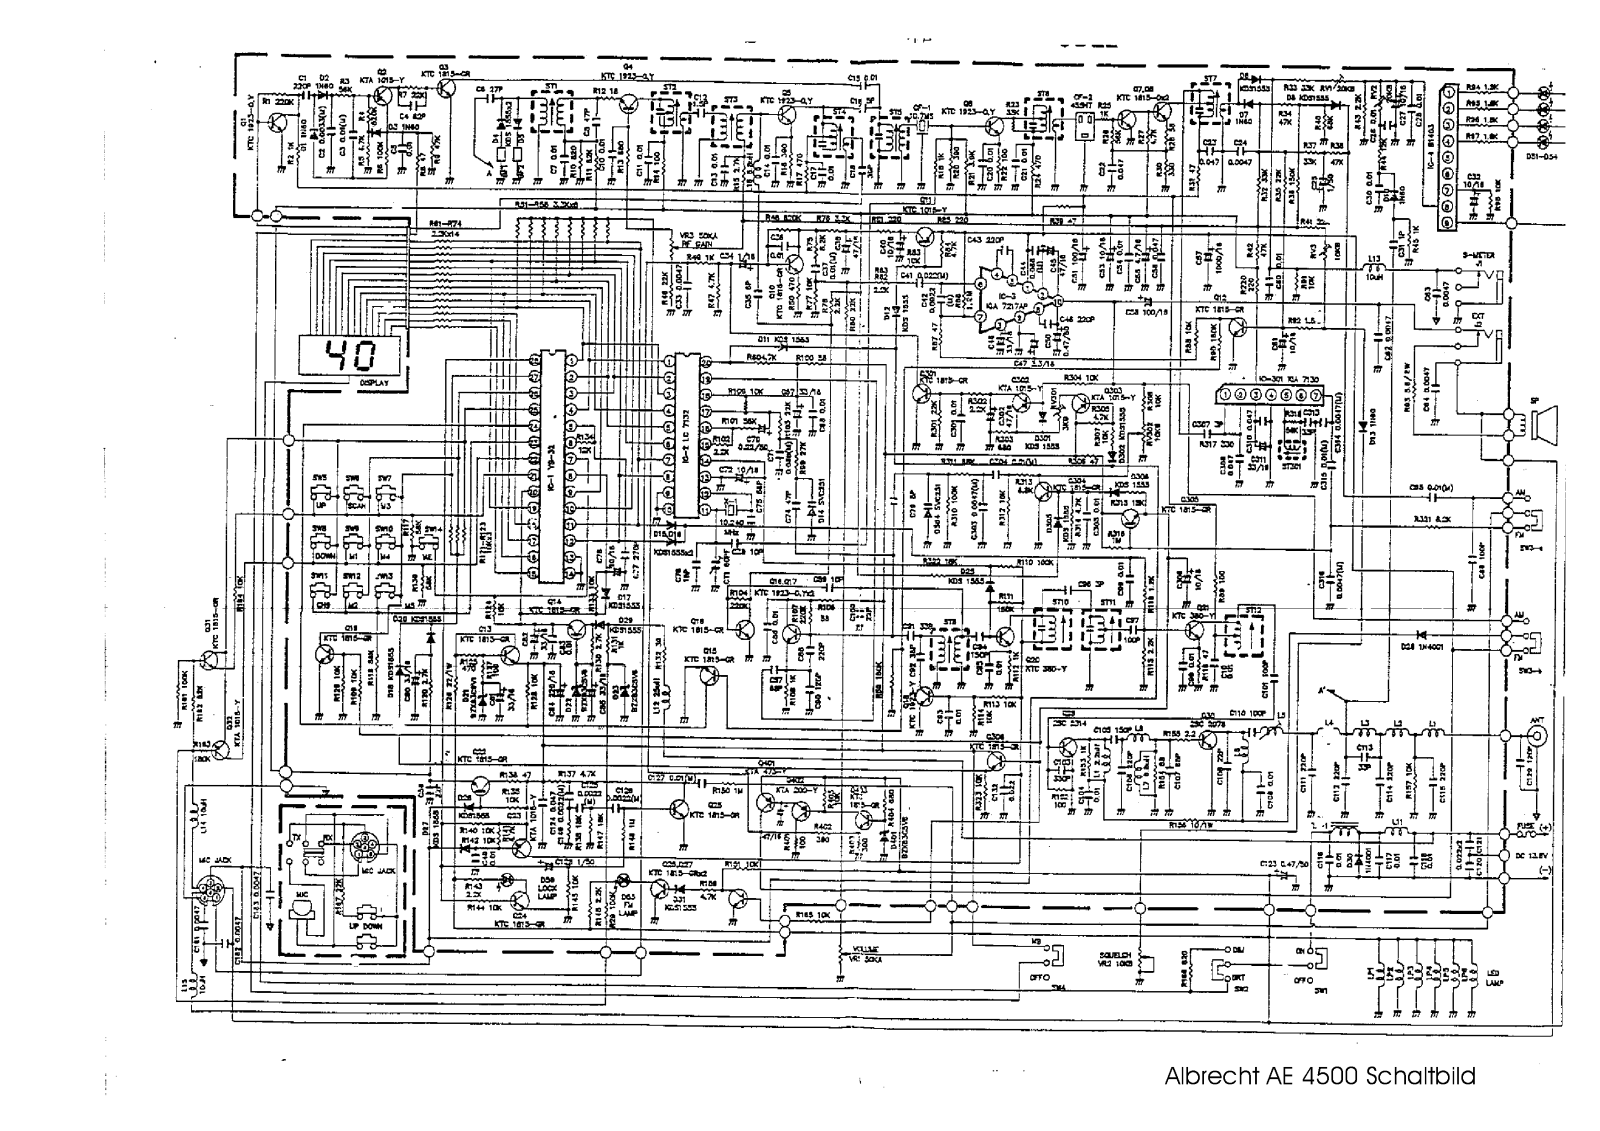 Albrecht AE 4500 Circuit Diagram